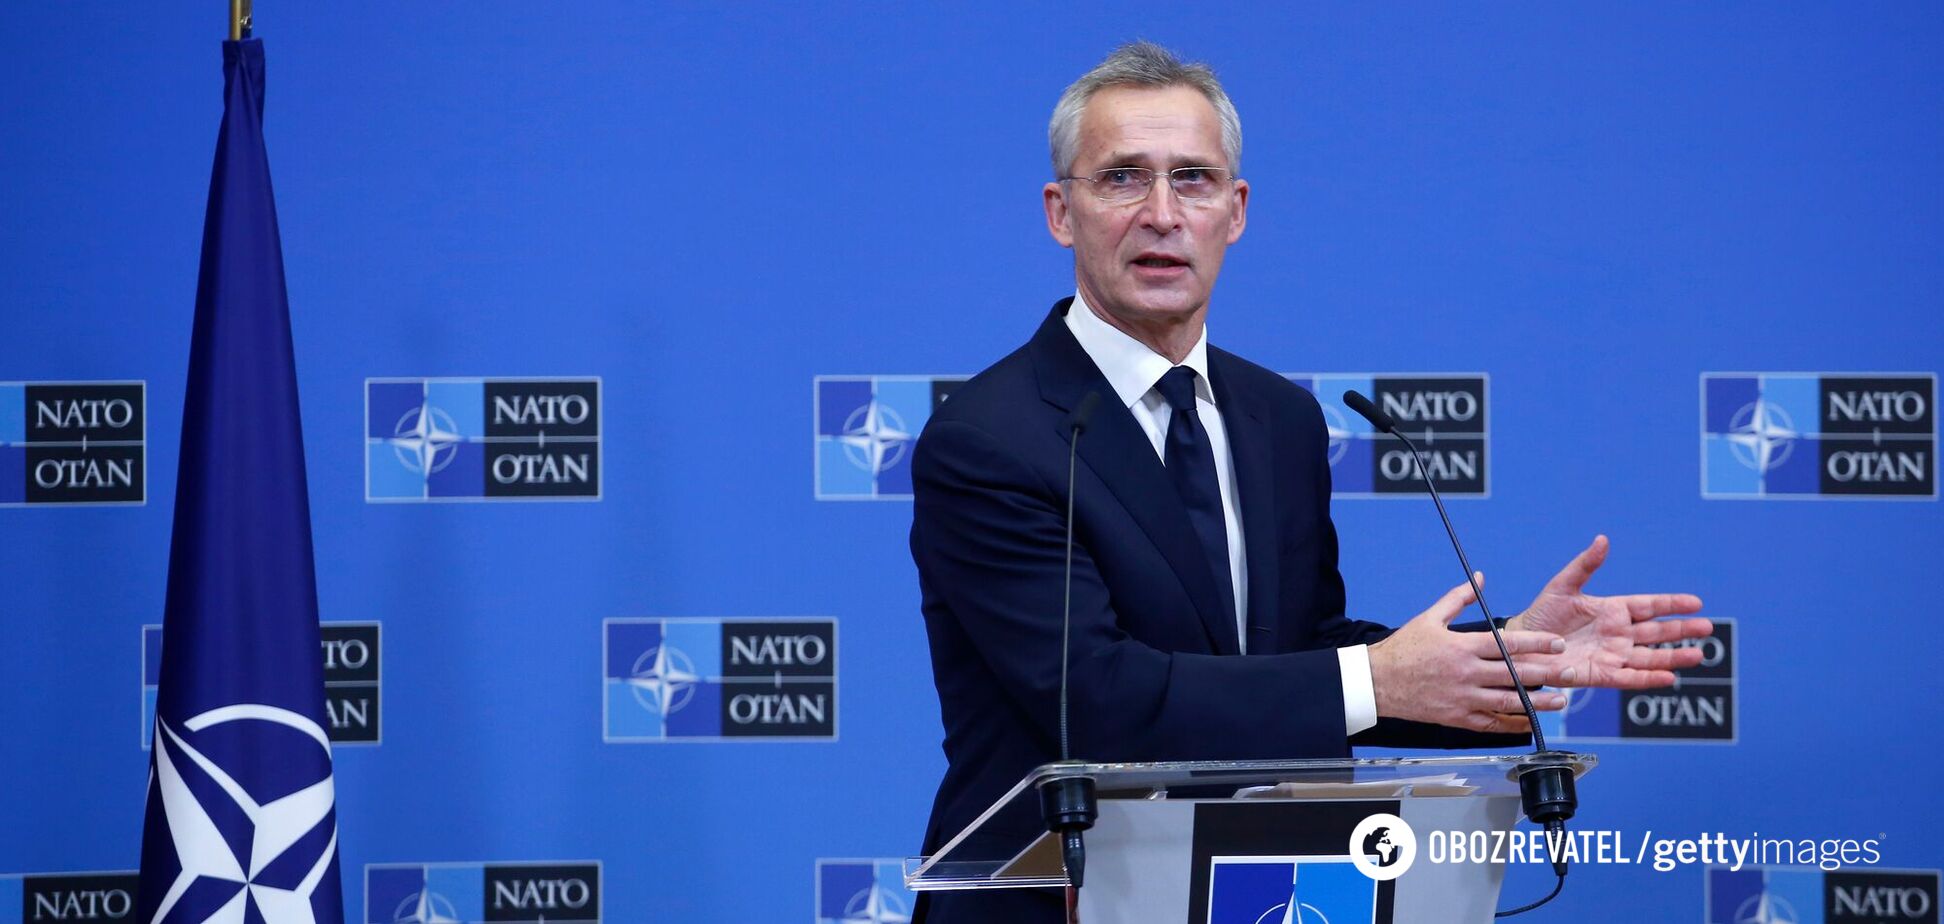 НАТО не будет размещать войска в Украине в случае вторжения РФ, – Столтенберг